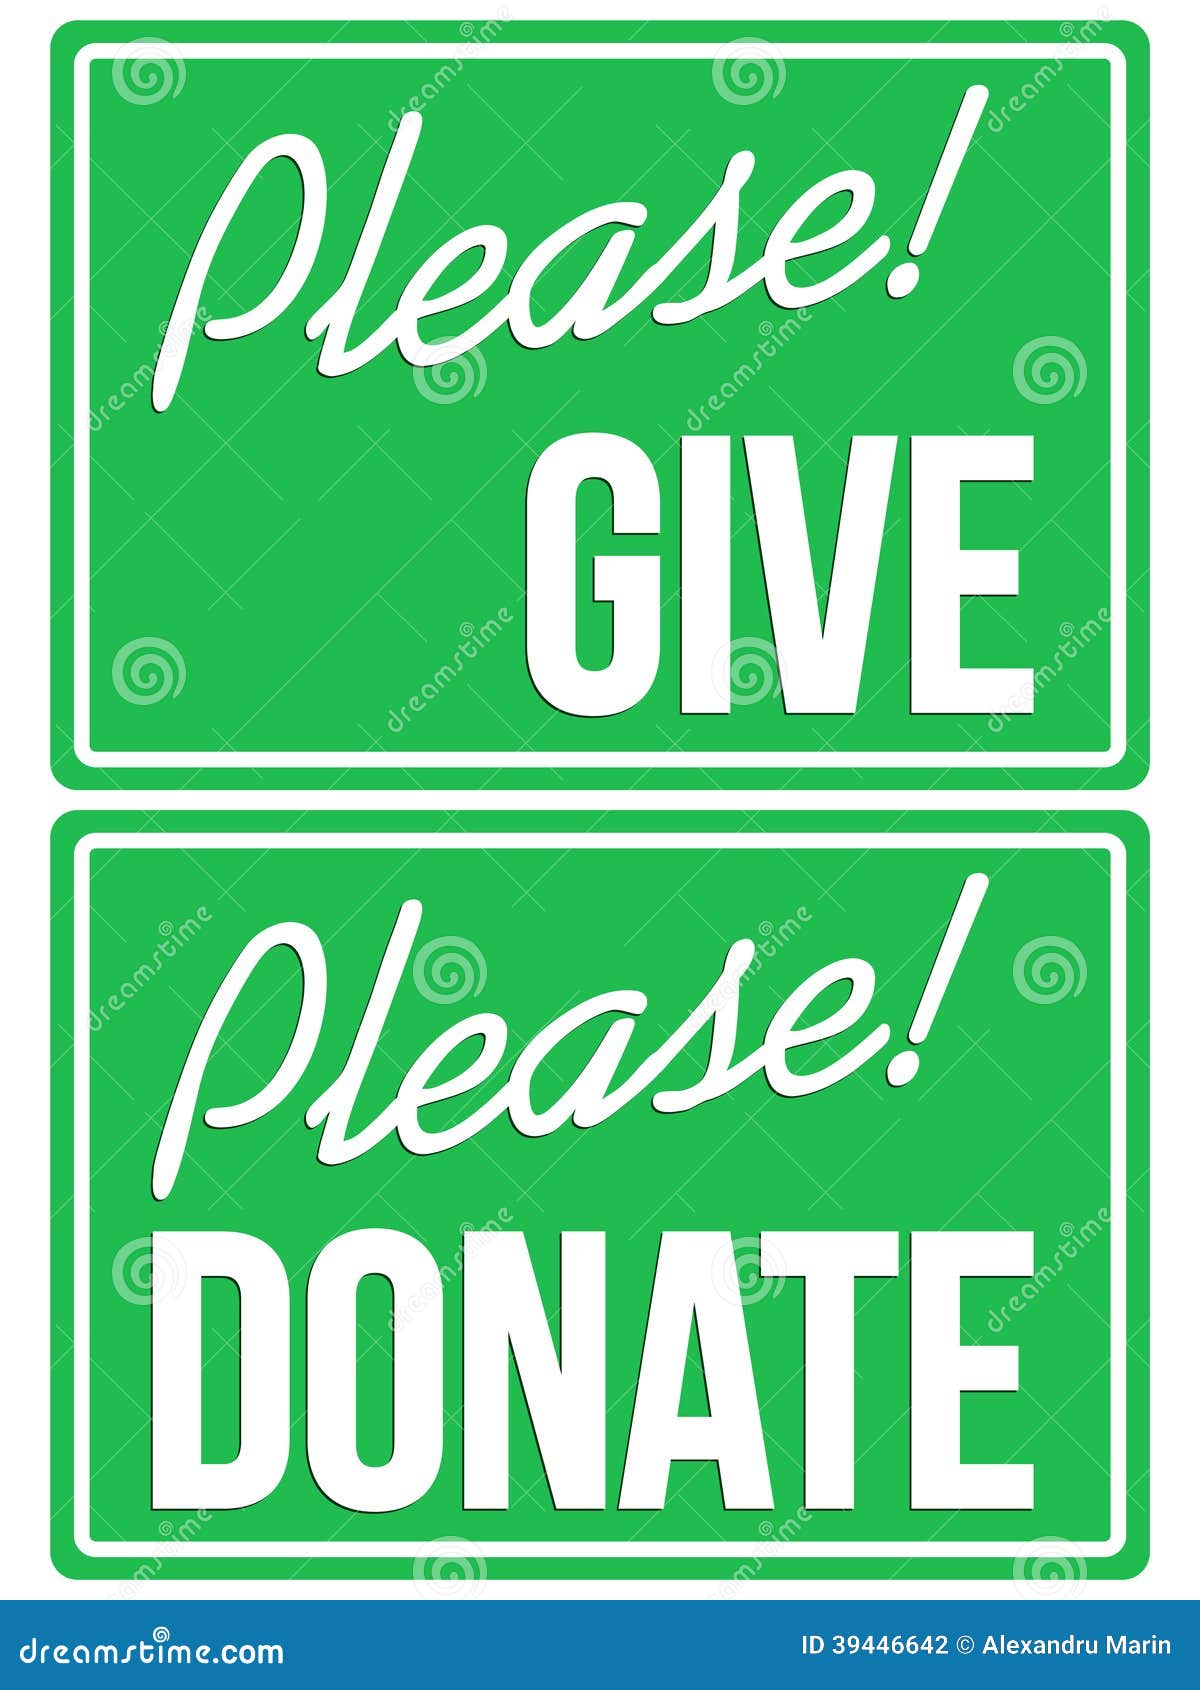 please donate clipart